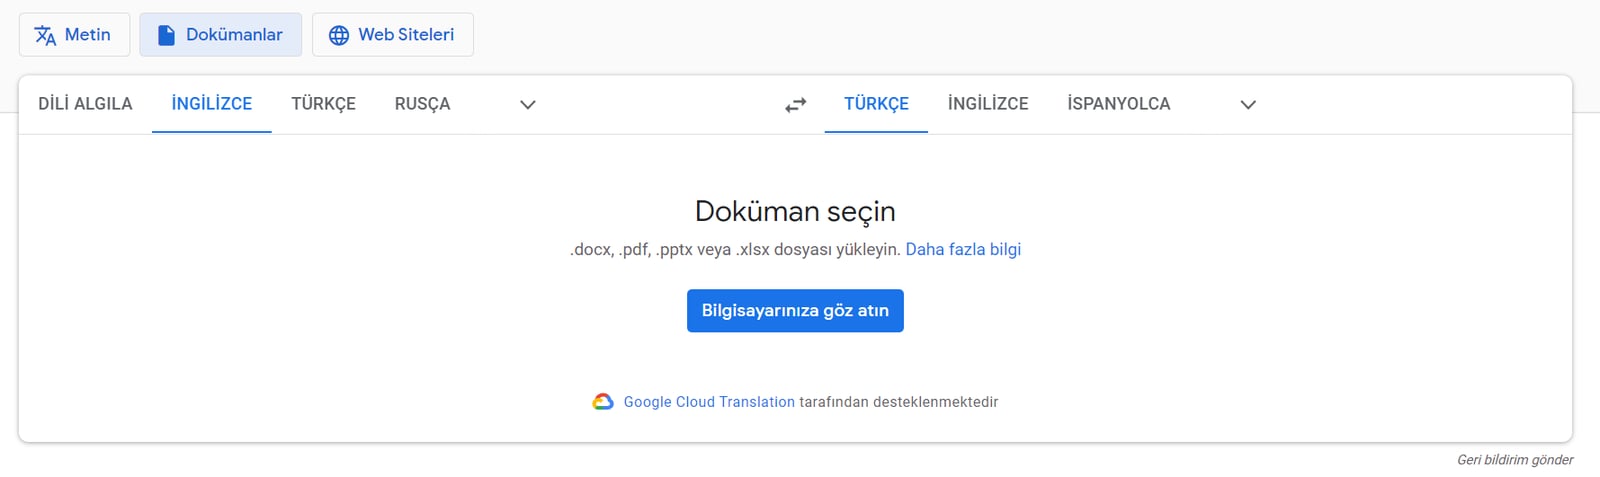 google translate daha etkin kullanmanizi saglayacak x ozellik 1